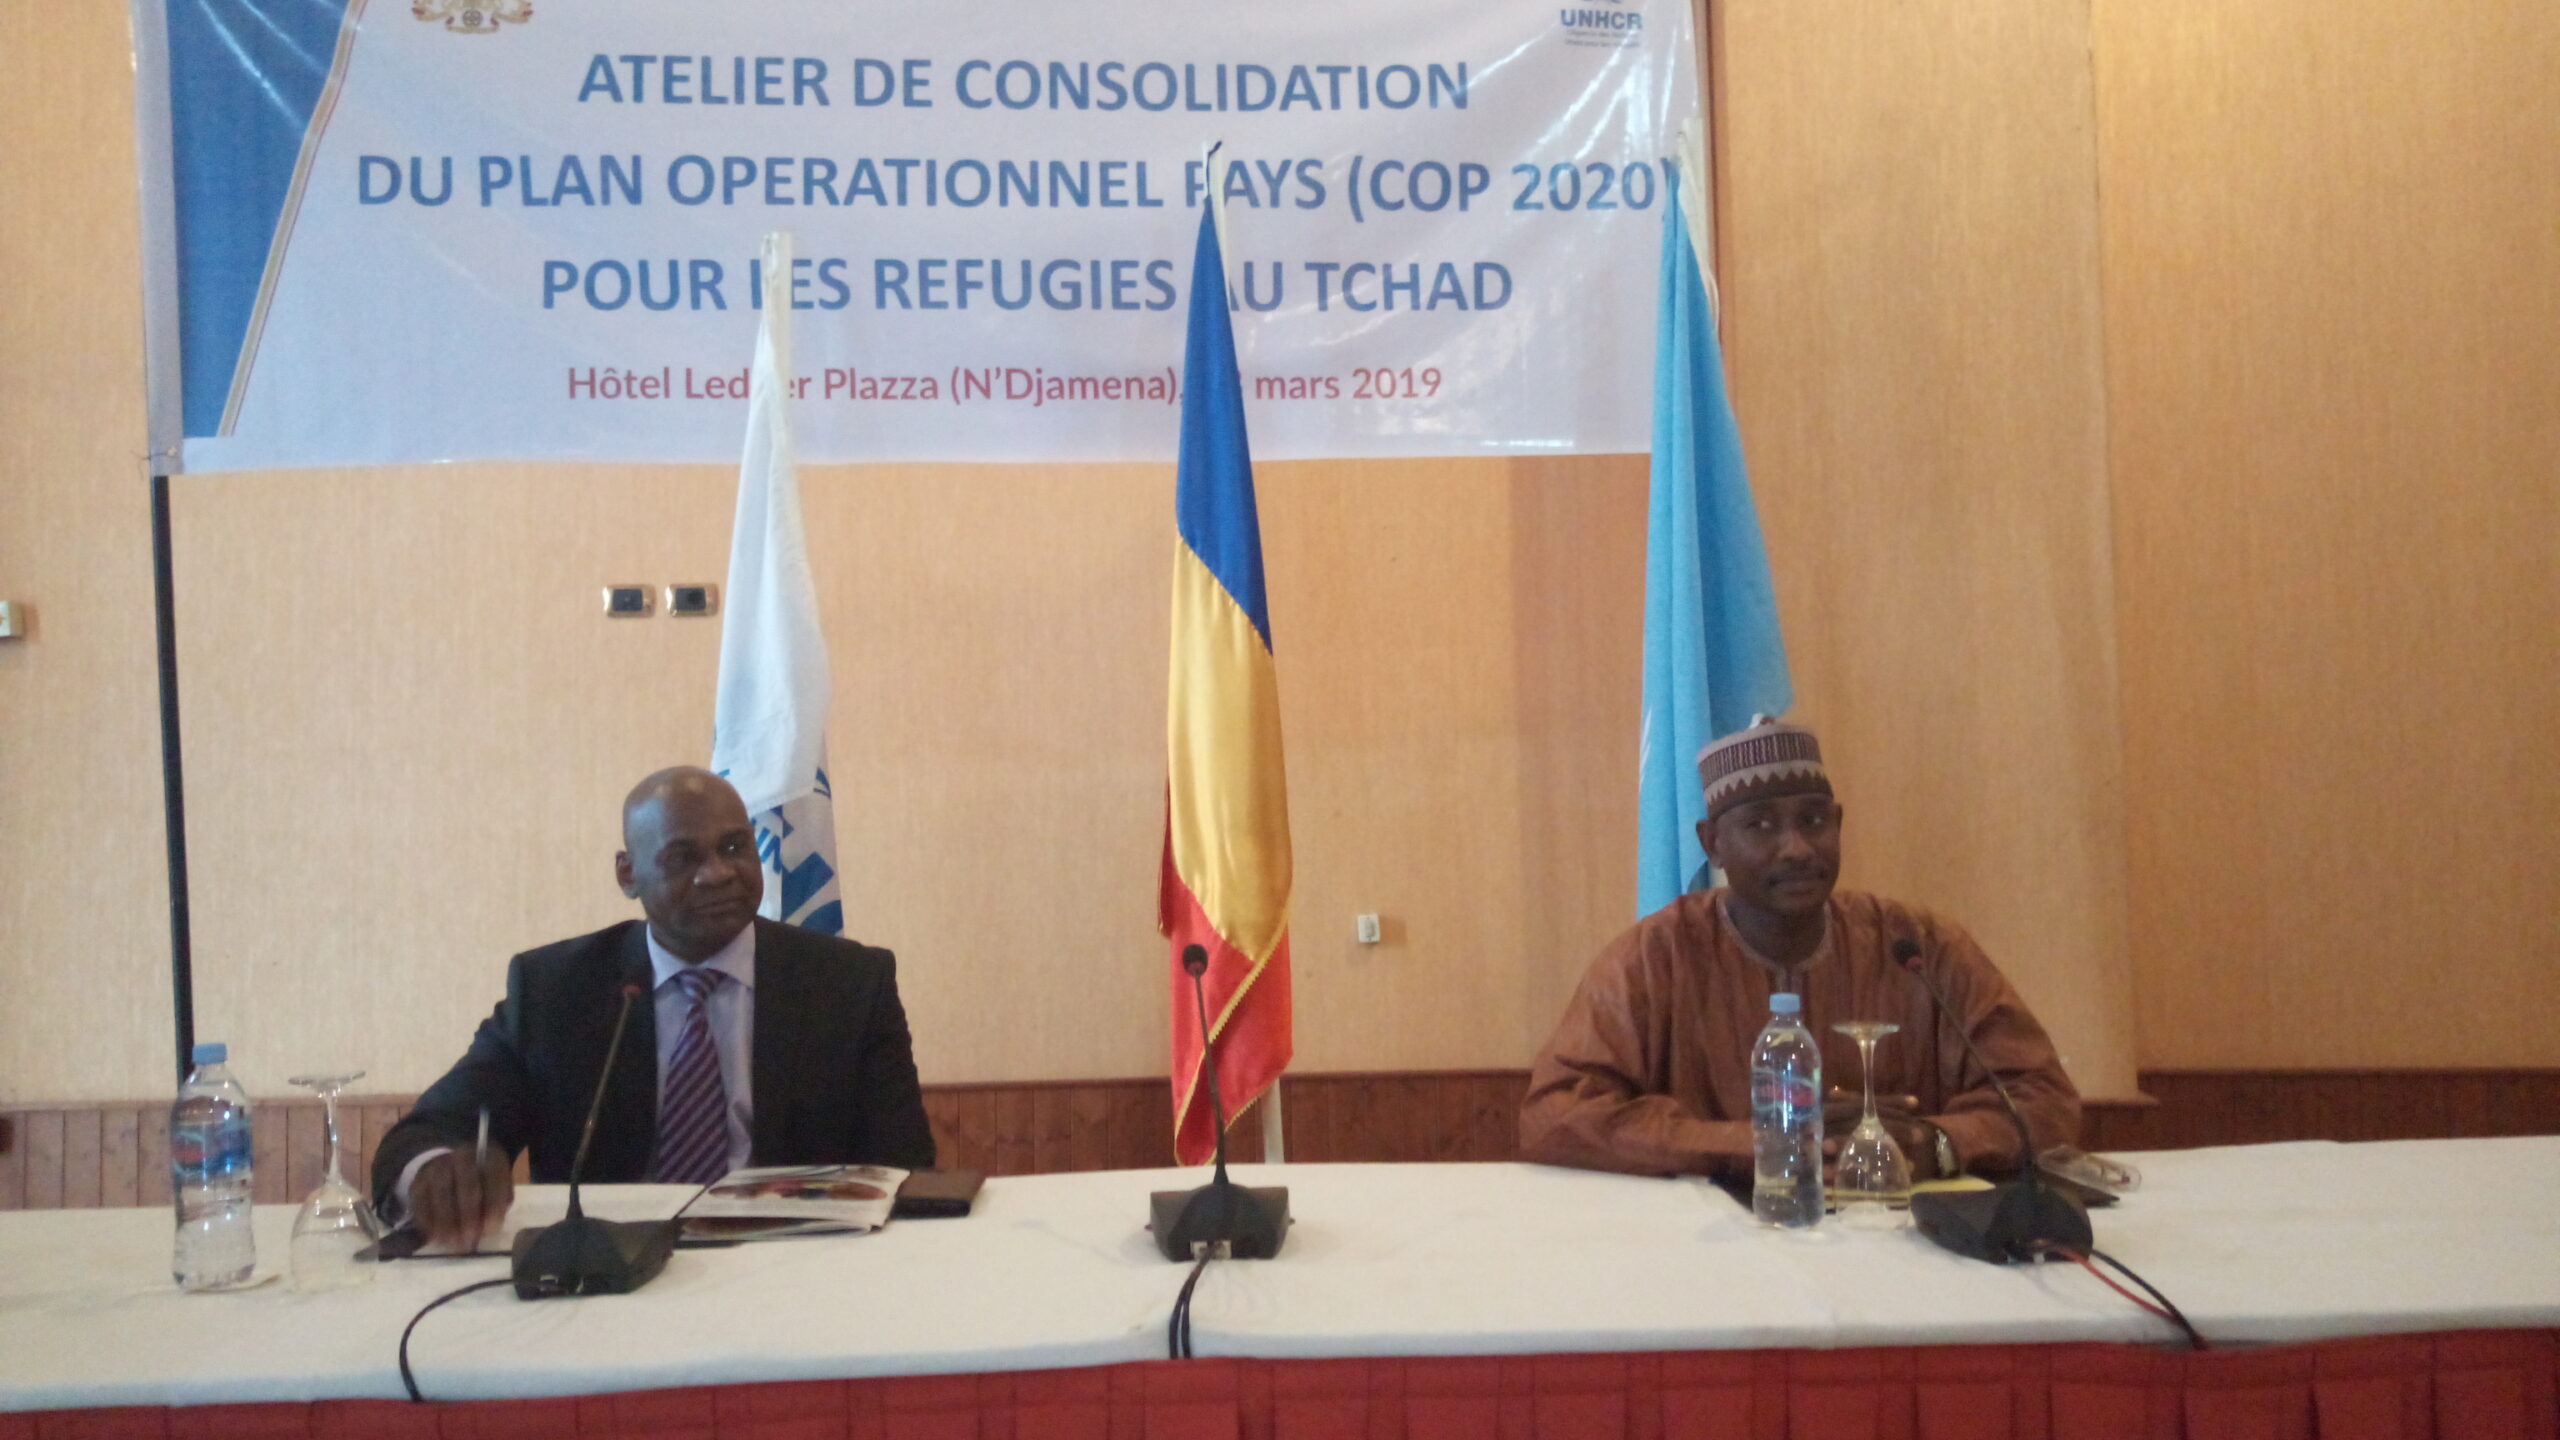 Tchad : le HCR consolide son plan opérationnel pays COP 2020